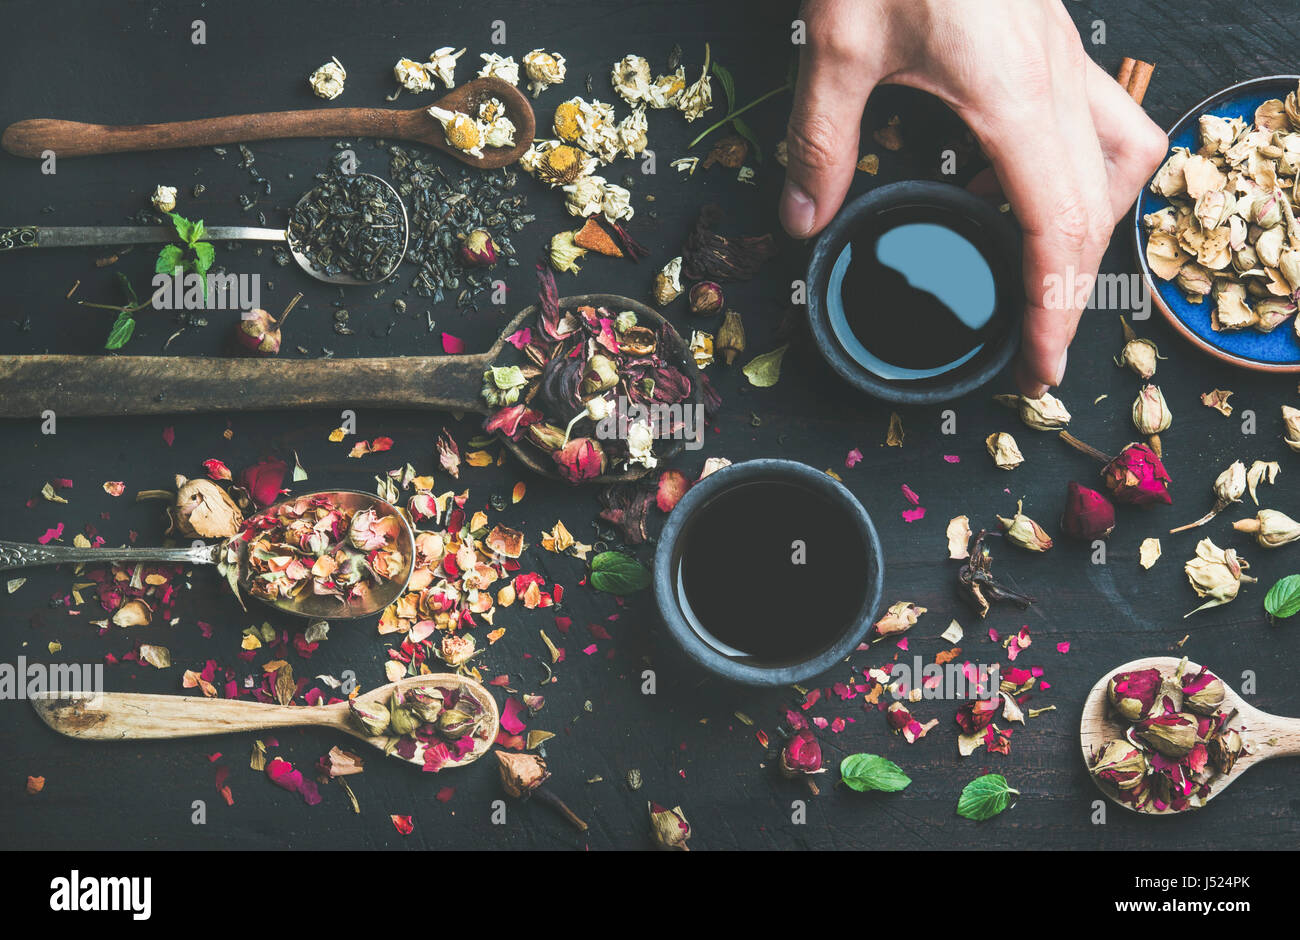 Thé noir chinois dans des tasses grès noir, la main de l'homme tenant une tasse et des cuillères en bois avec des herbes, des boutons de fleurs et feuilles sur un parquet en bois noir backgroun Banque D'Images